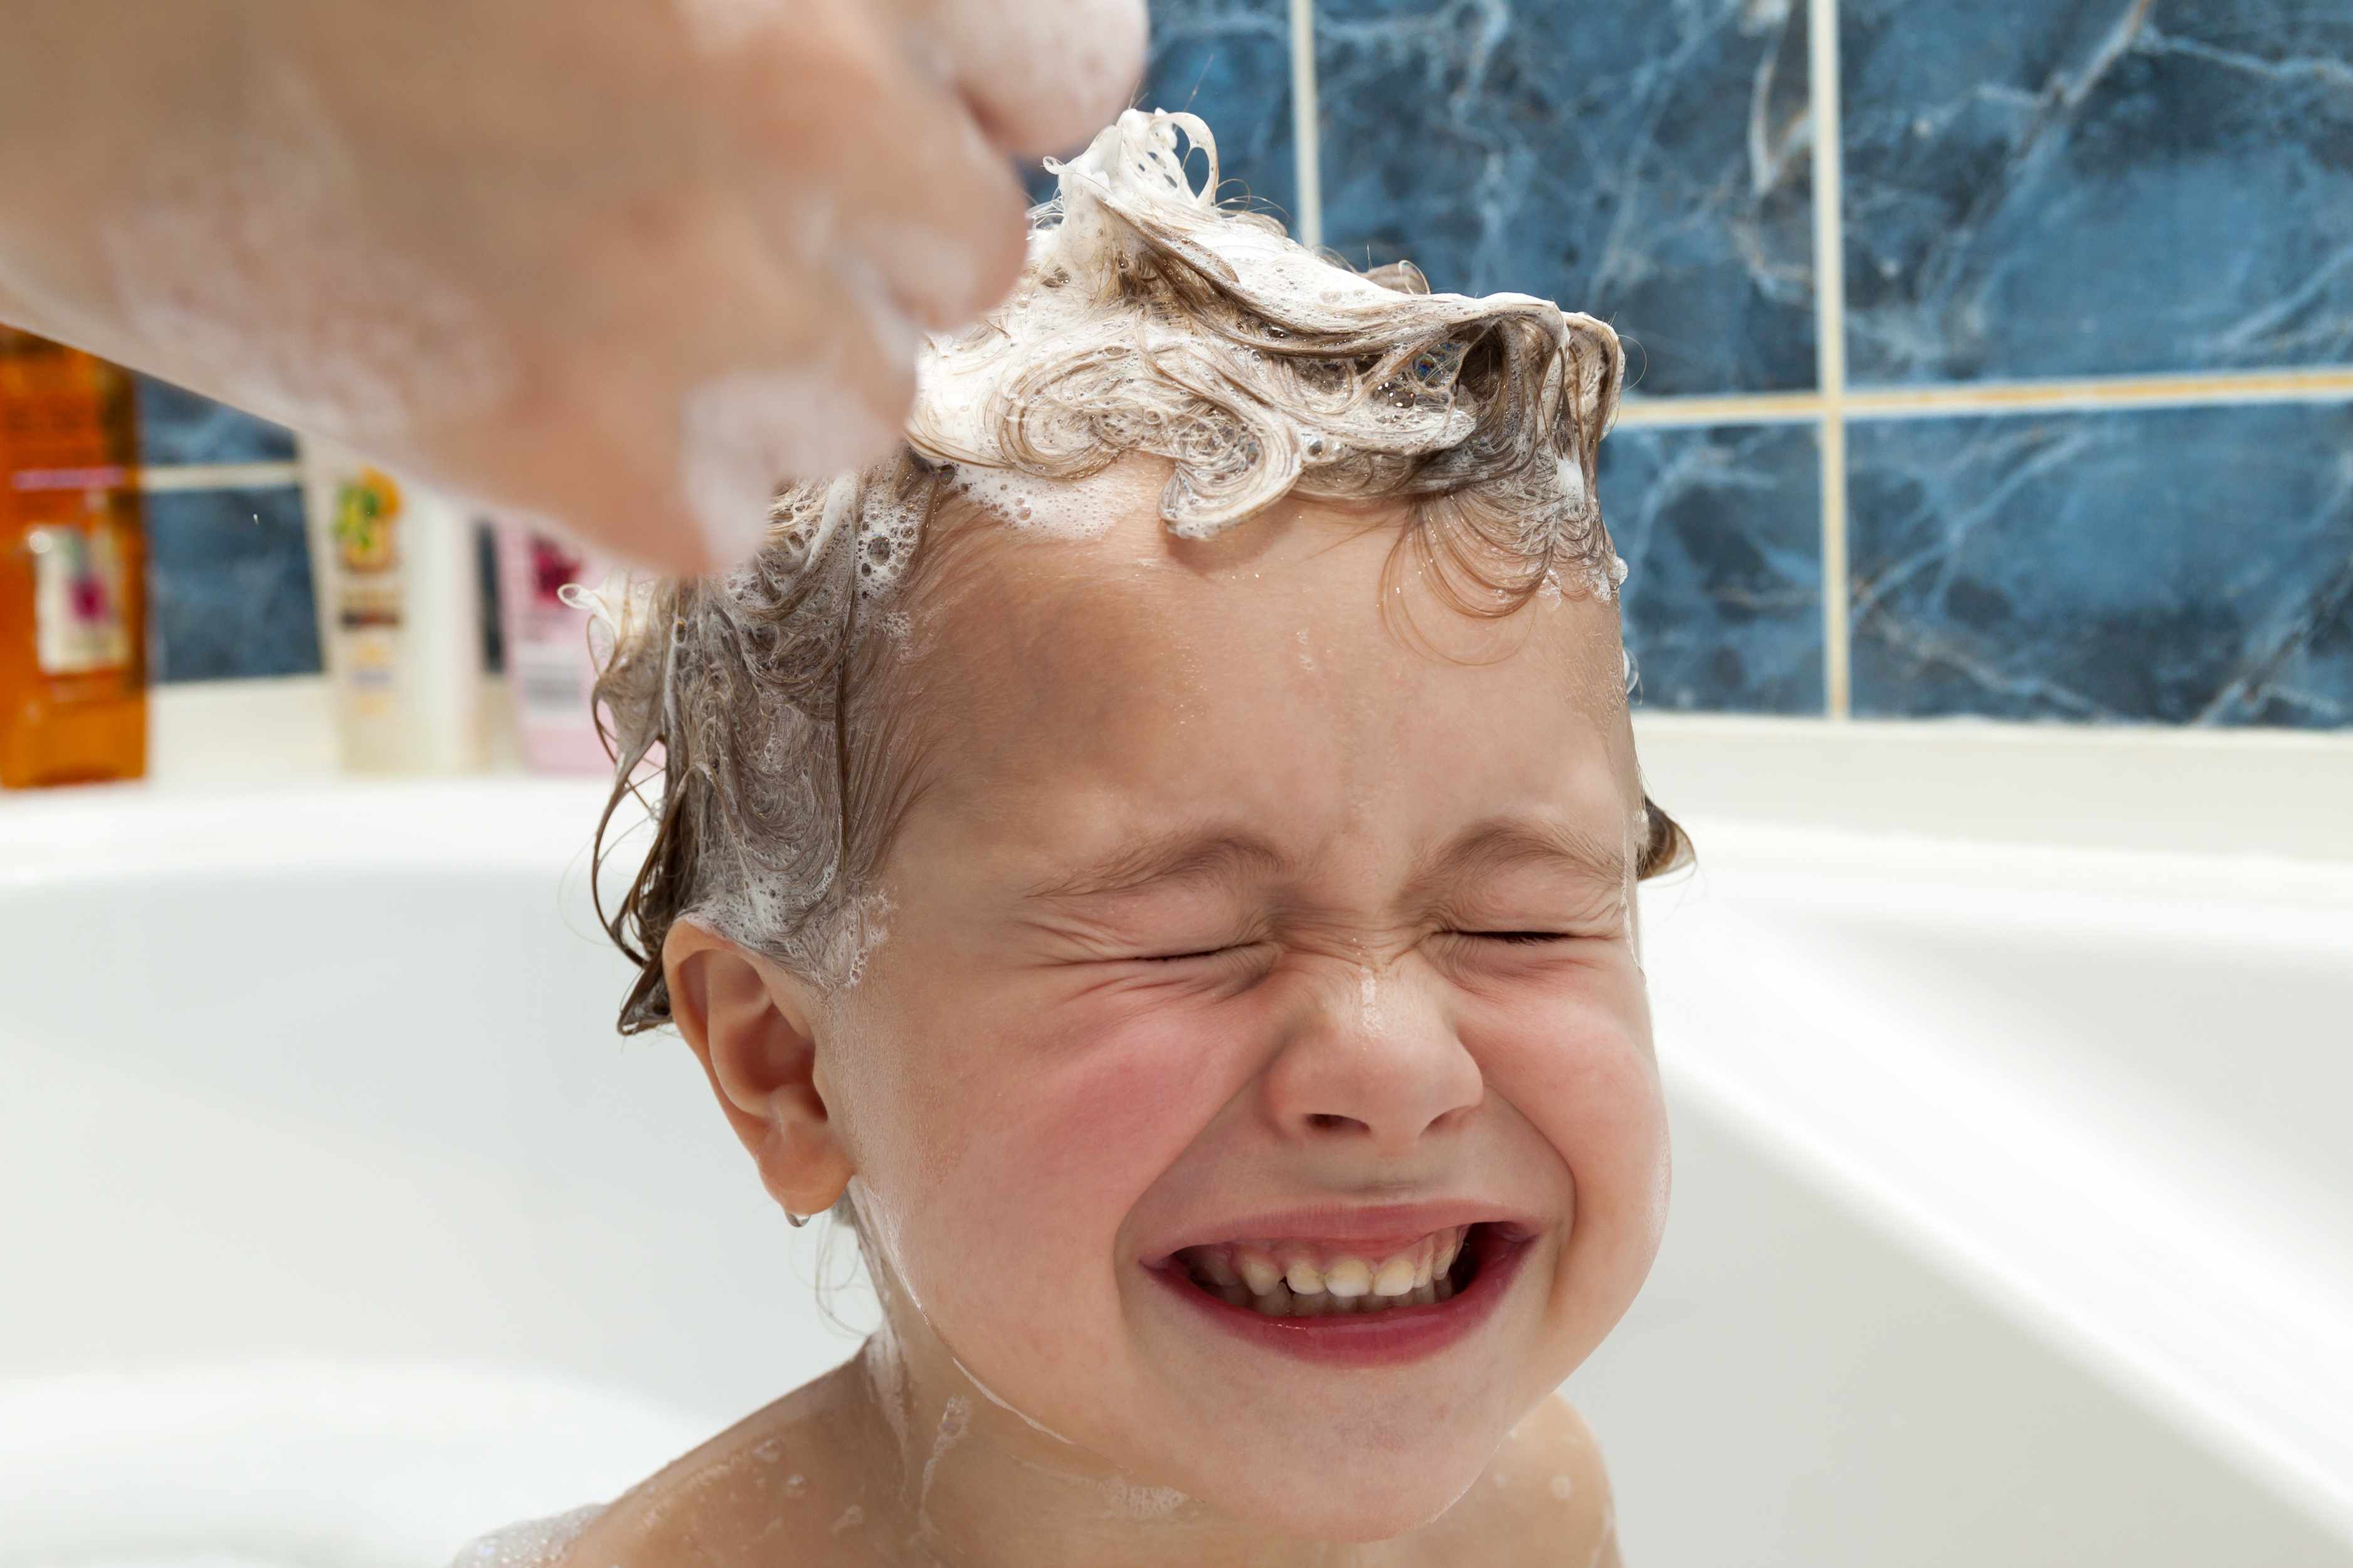 Mayo Clinic Minute: How often do kids need to shampoo? - Mayo Clinic News  Network